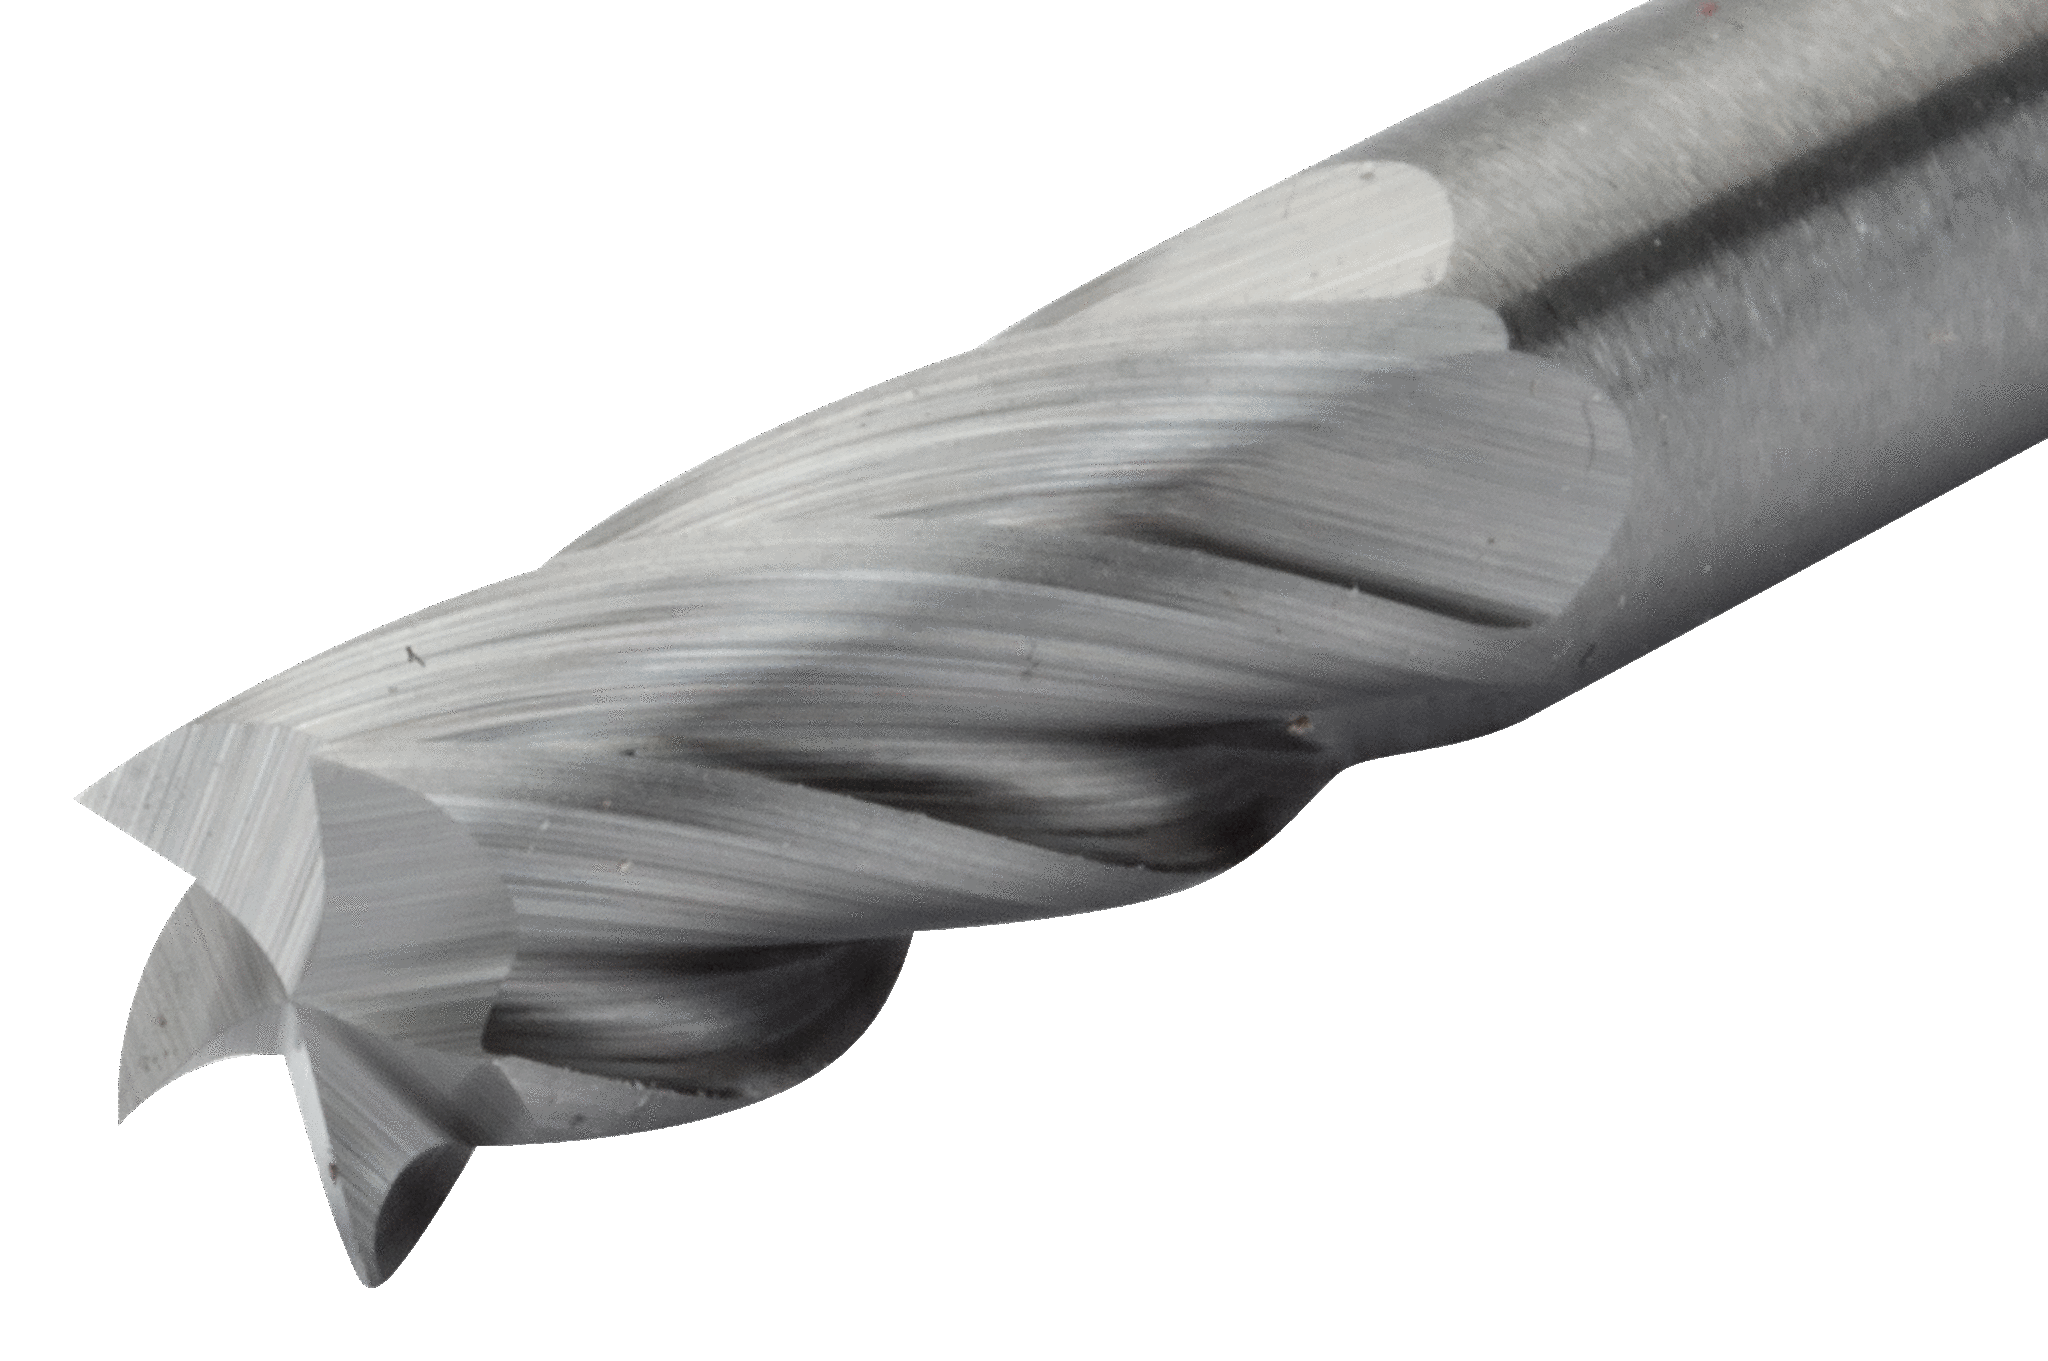 картинка Твердосплавные борфрезы с цилиндрической головкой по алюминию BAHCO A1225AL06E от магазина "Элит-инструмент"